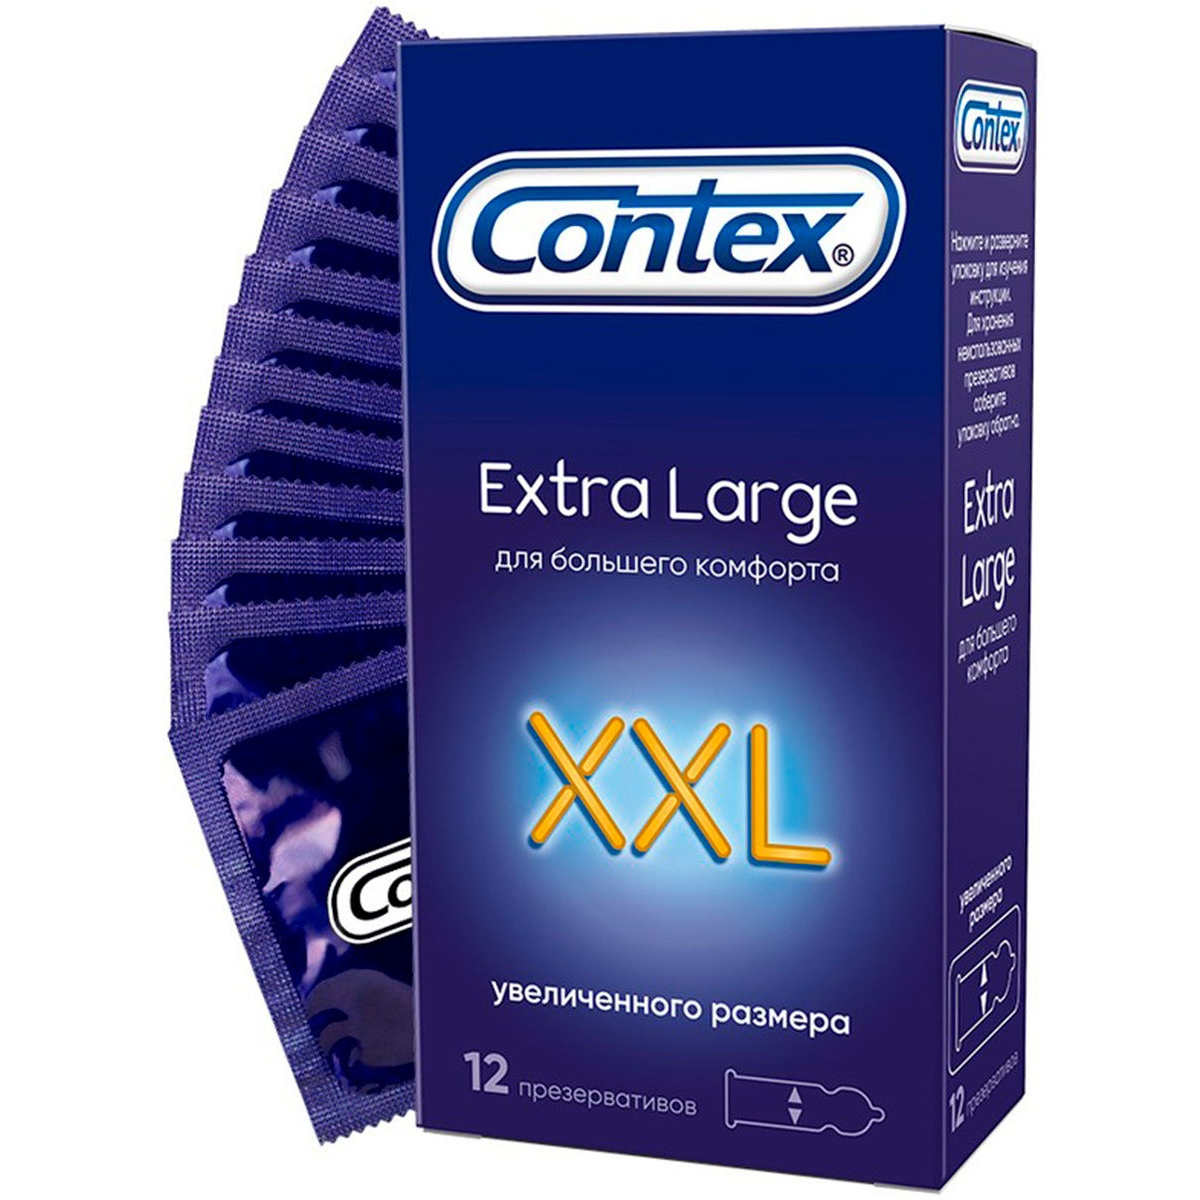 Презервативы Contex XXL Extra large №12 презервативы durex extra safe утолщенные 12 шт